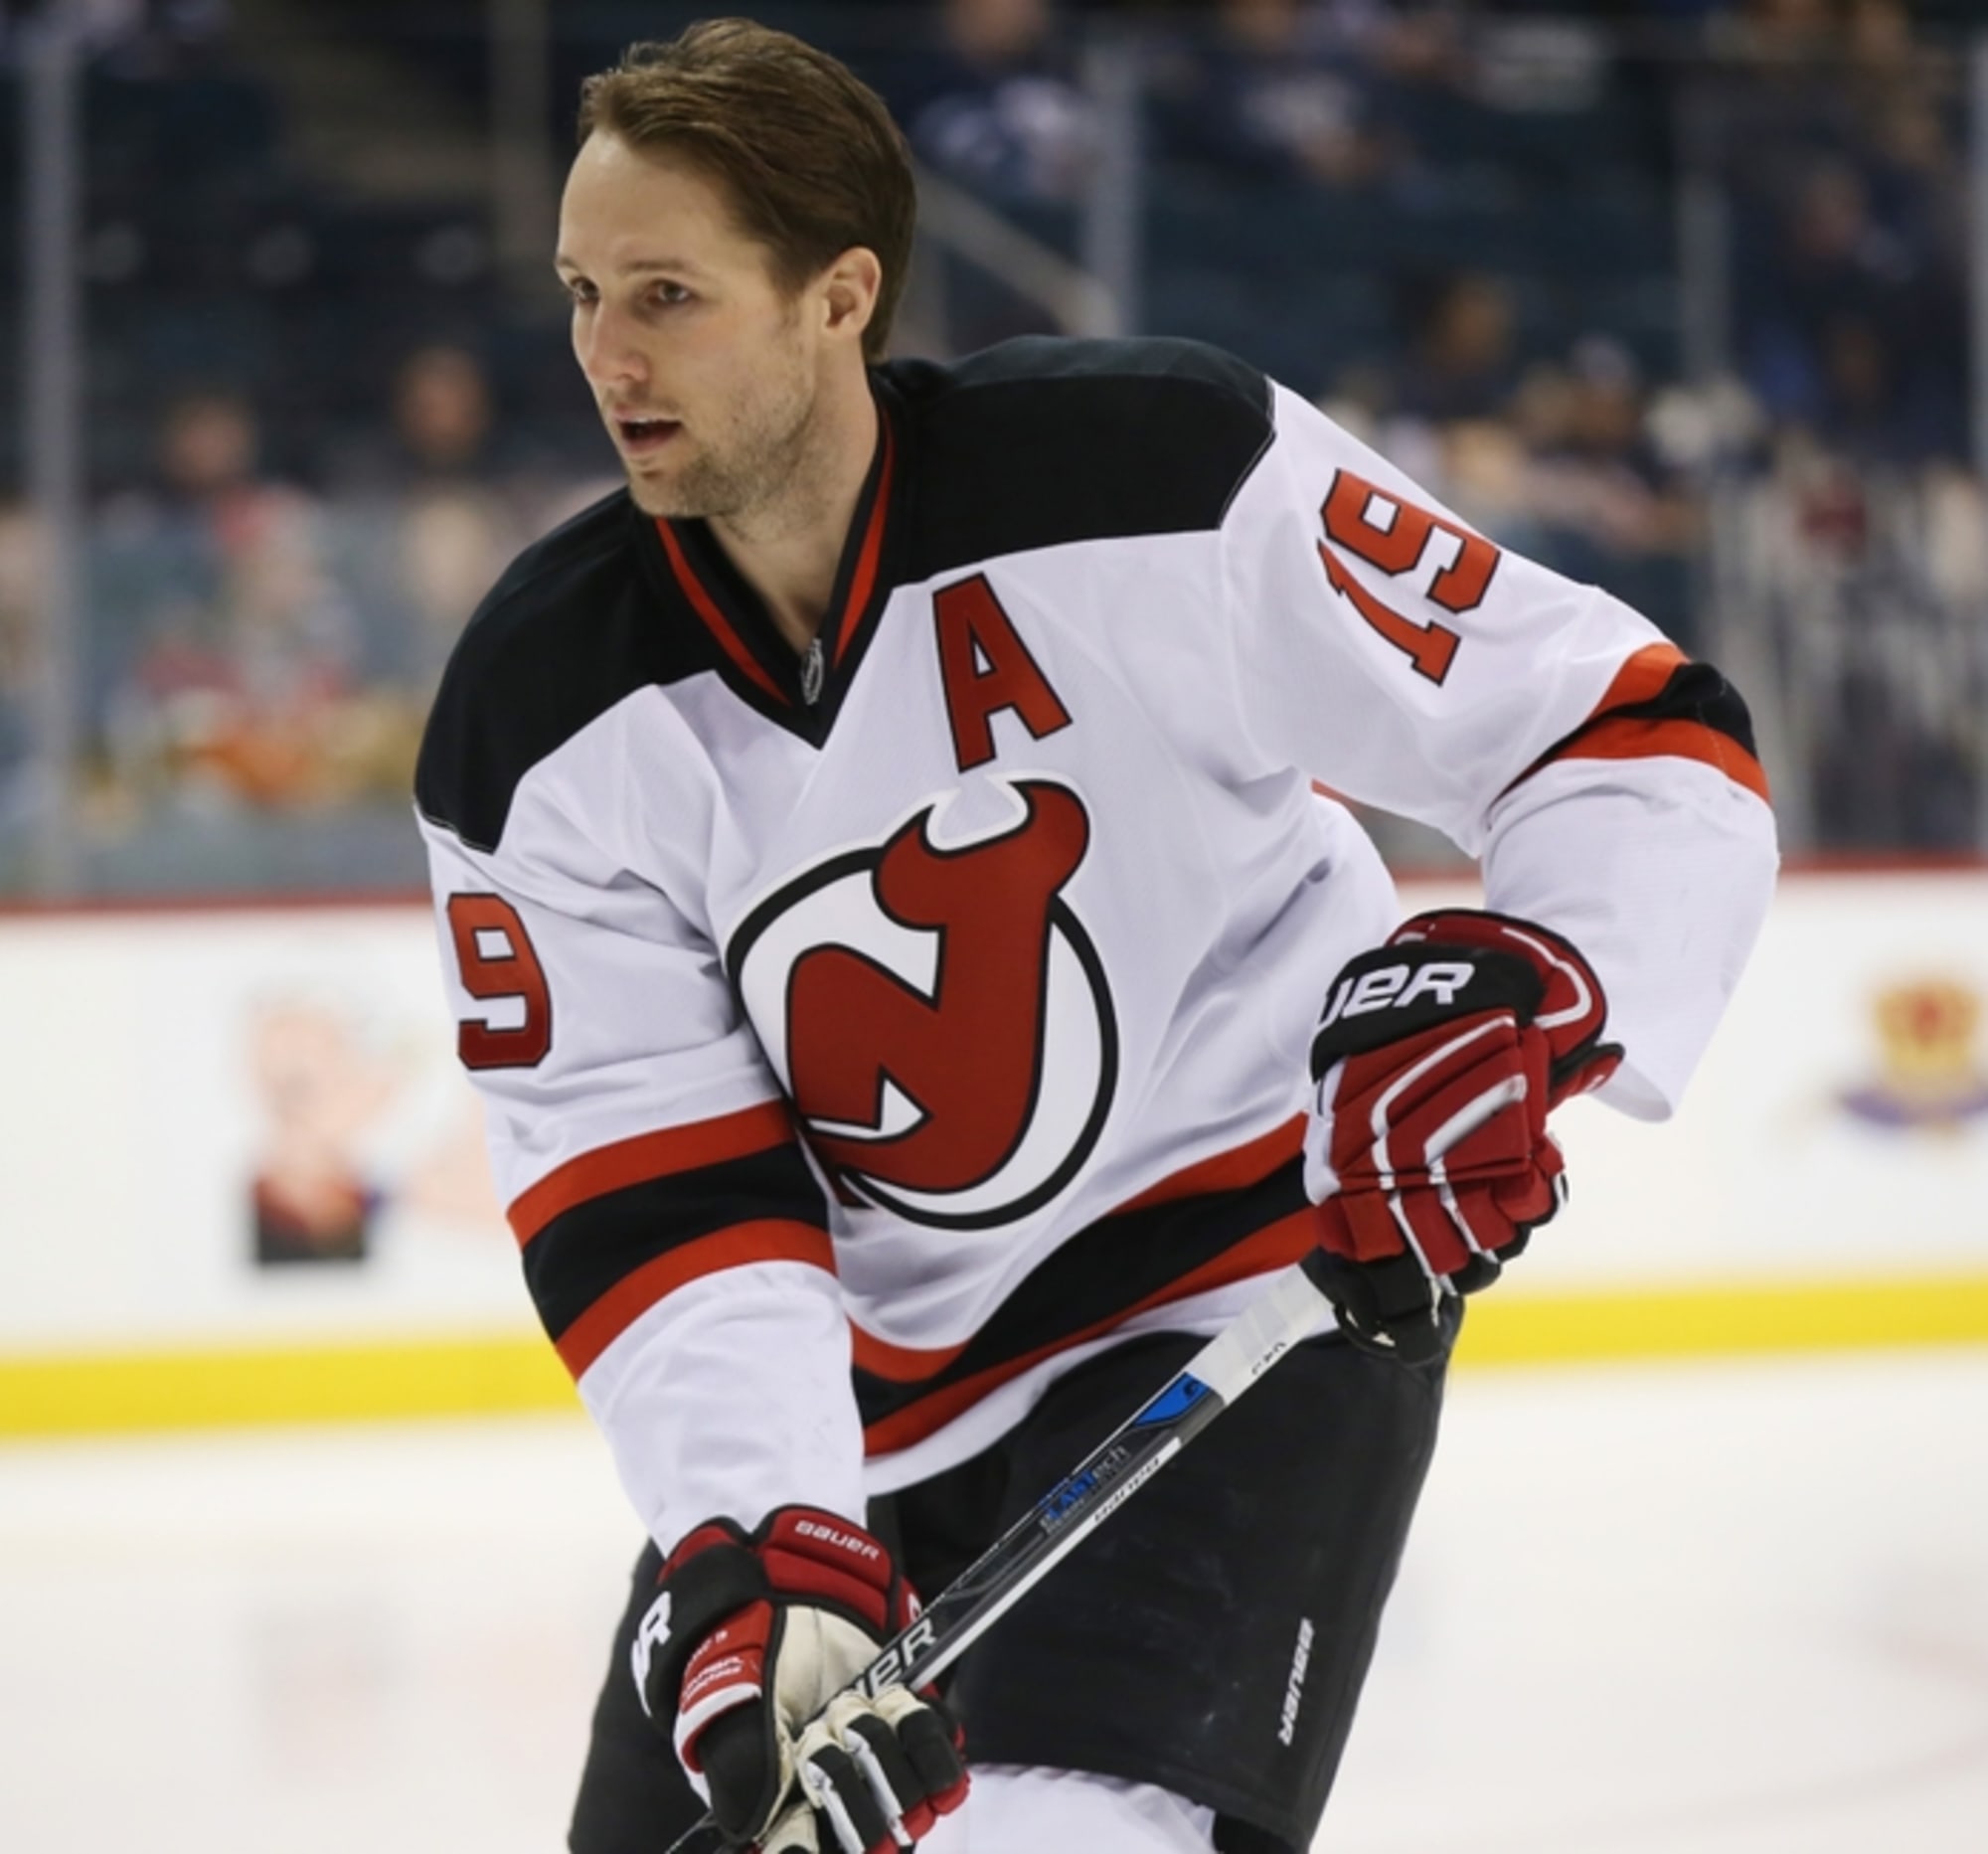 Devils' legend Travis Zajac calls it a career